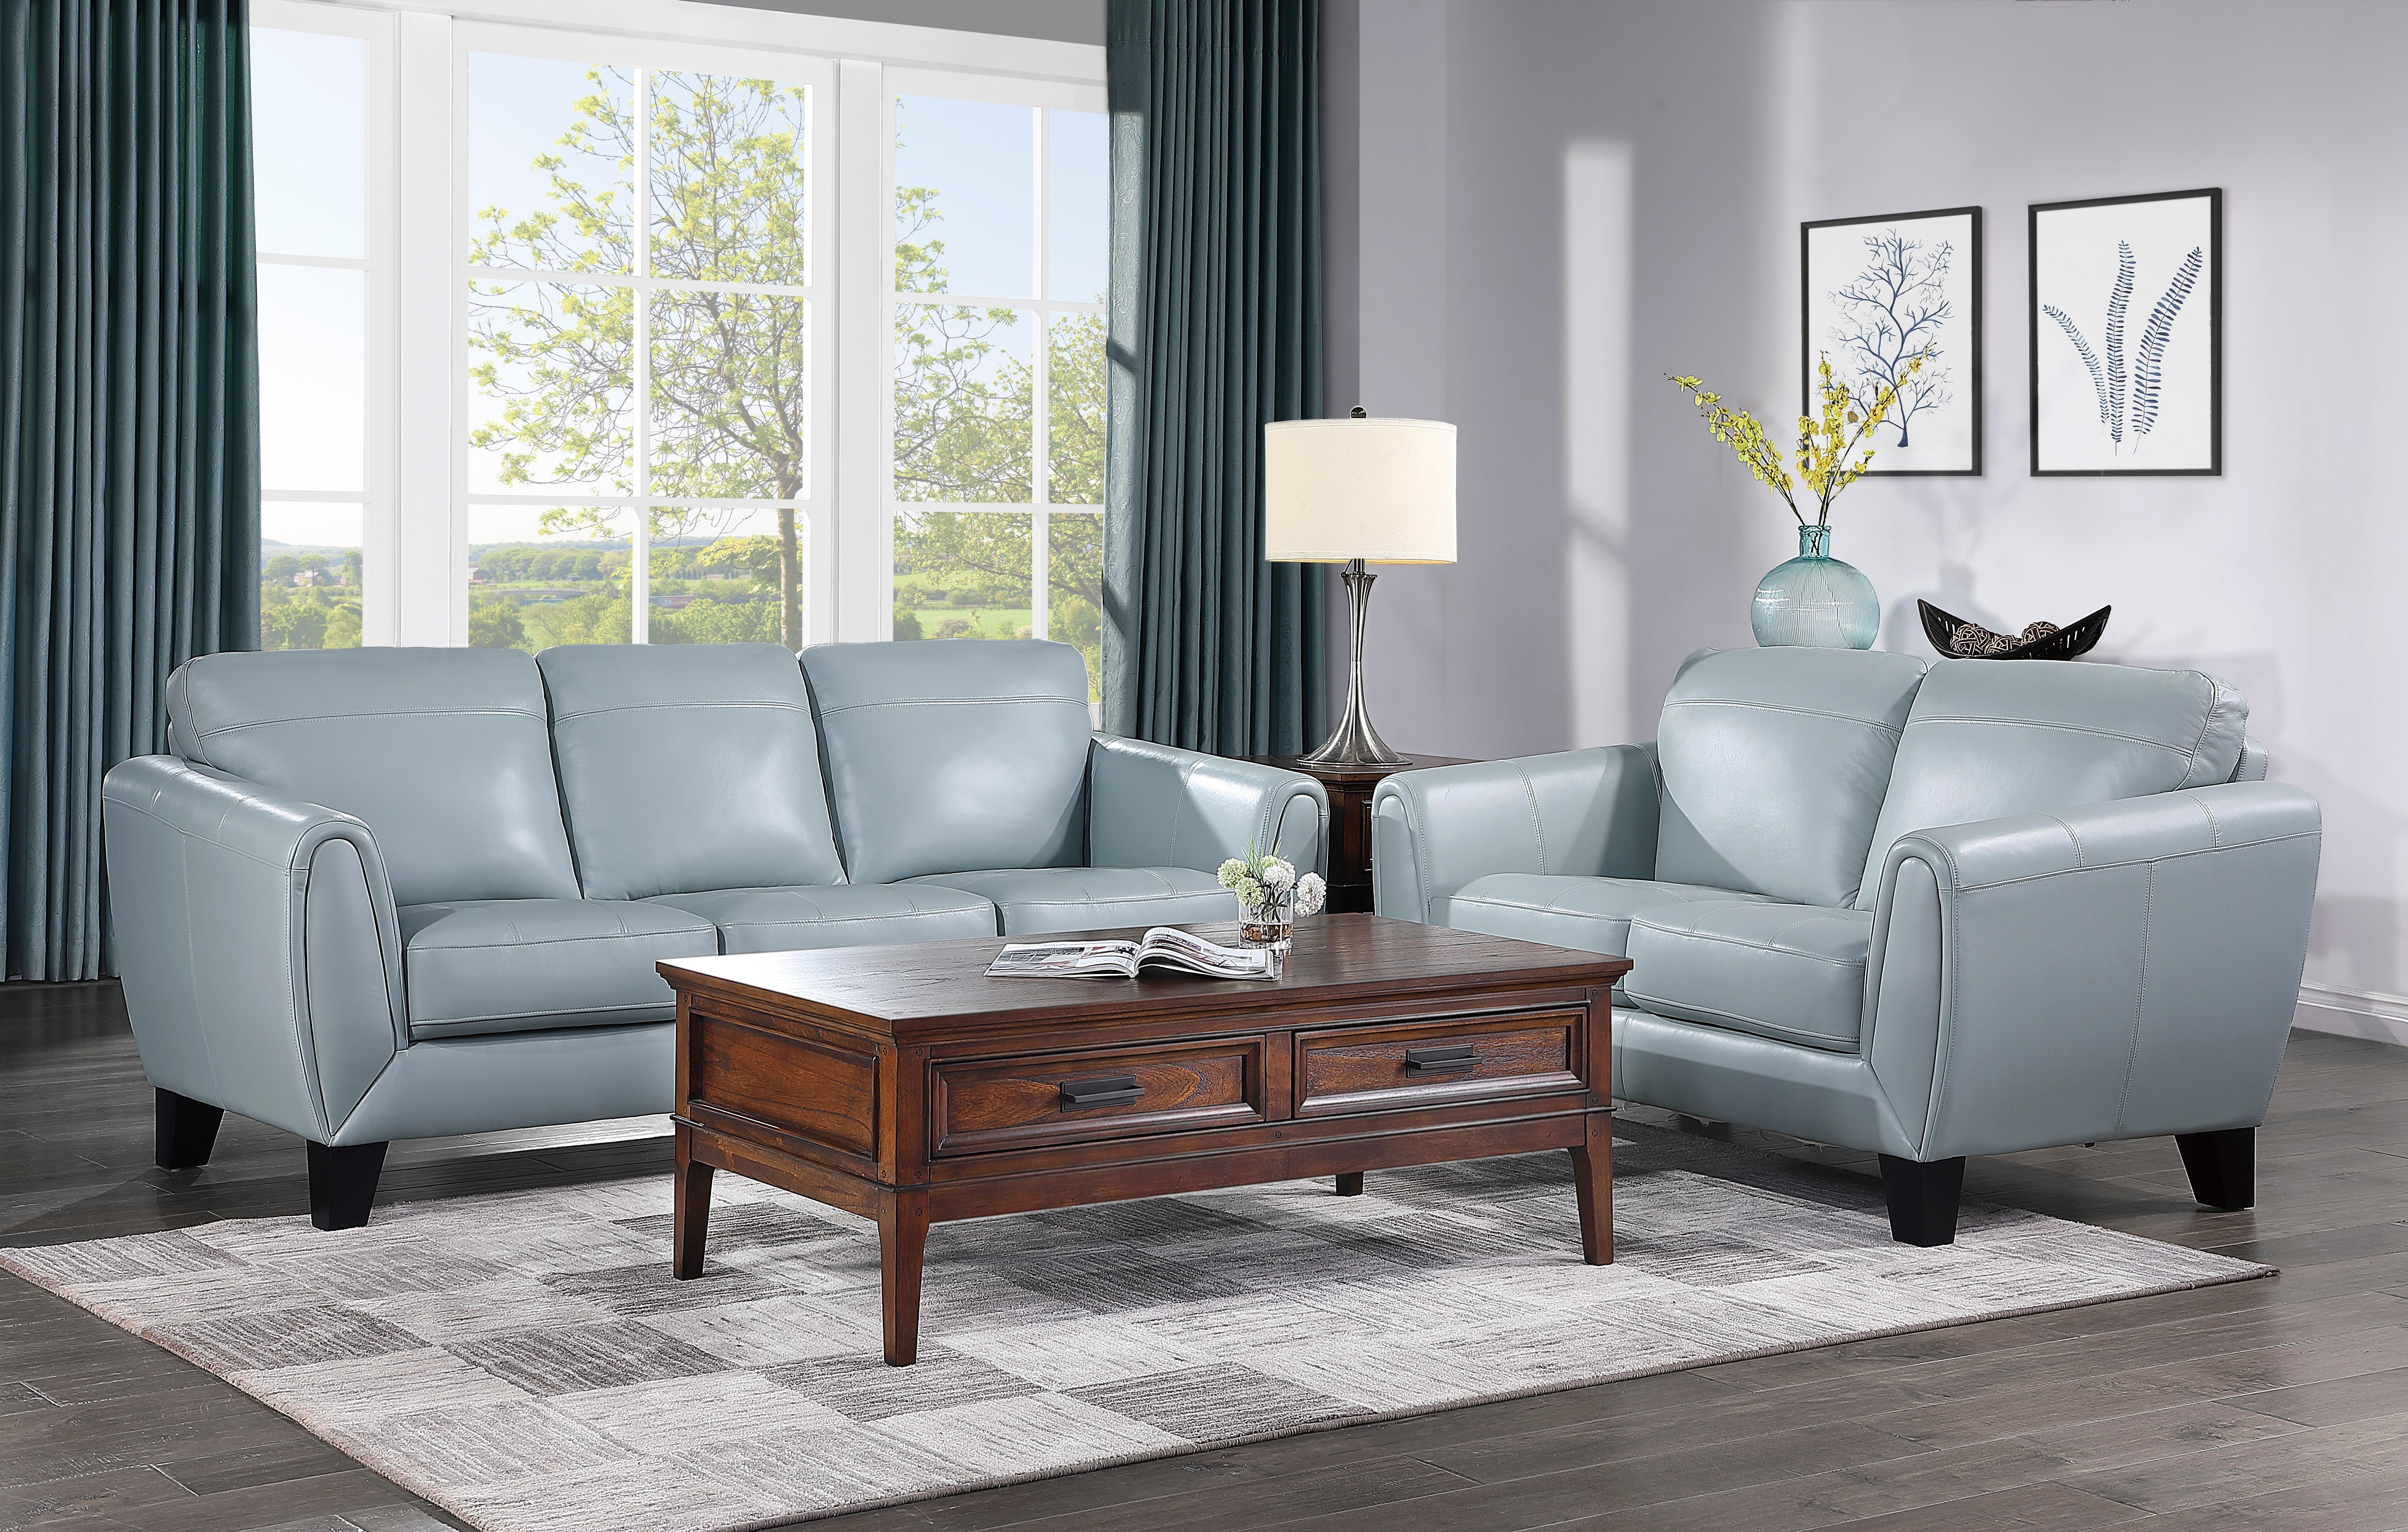 

    
Modern Aqua Leather Living Room Set 2pcs Homelegance 9460AQ Spivey
